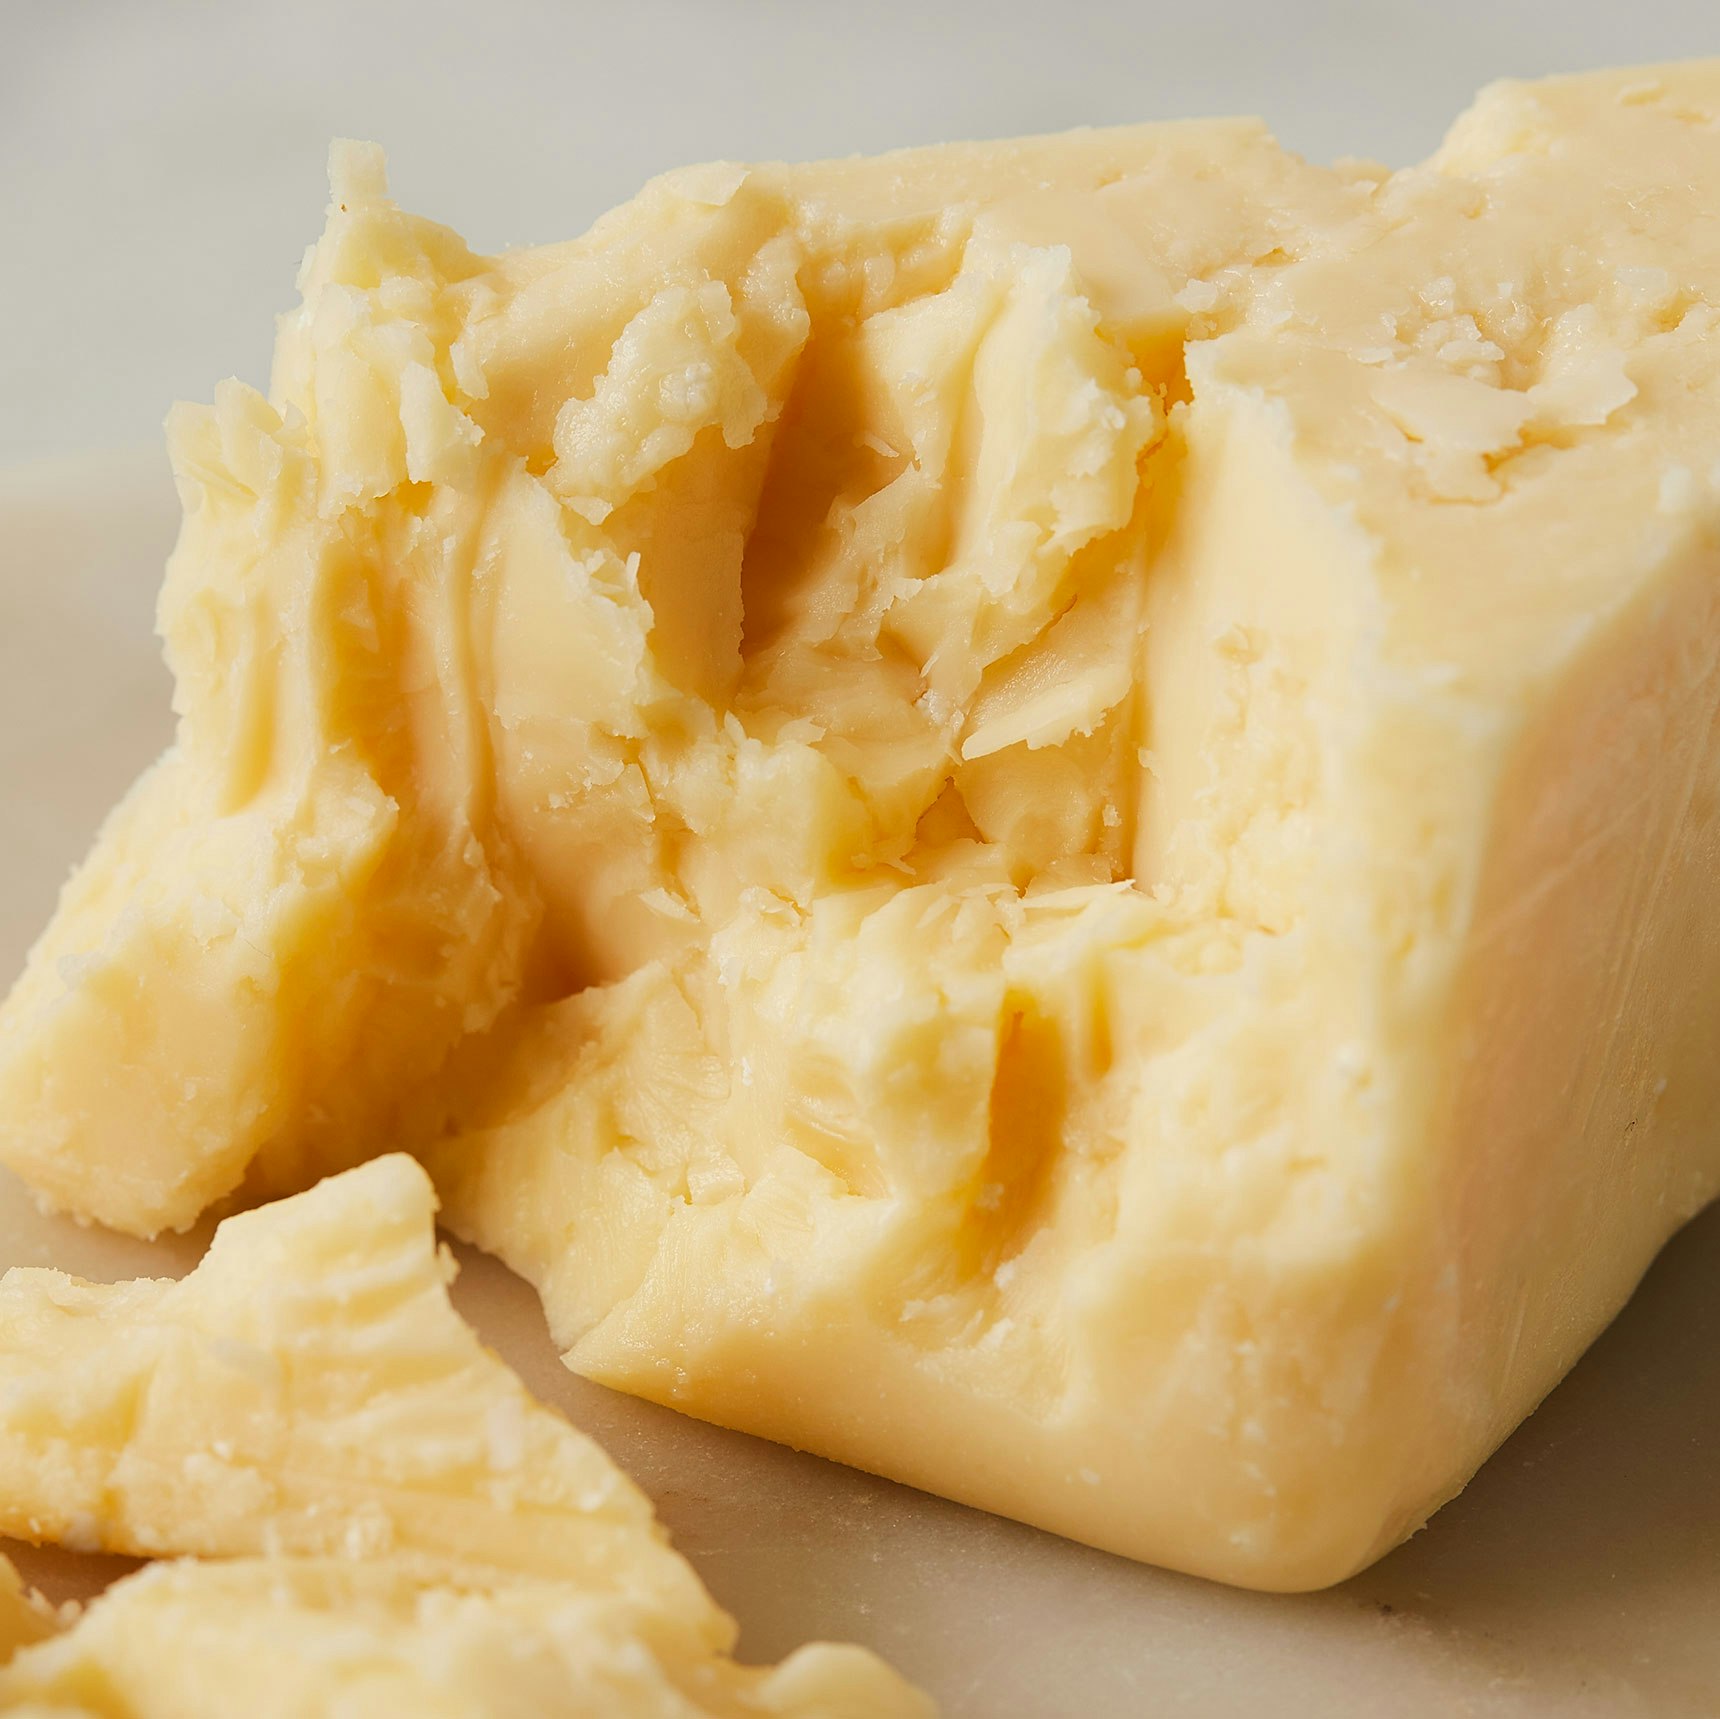 Beecher's Handmade Cheese Flagship 4 Year